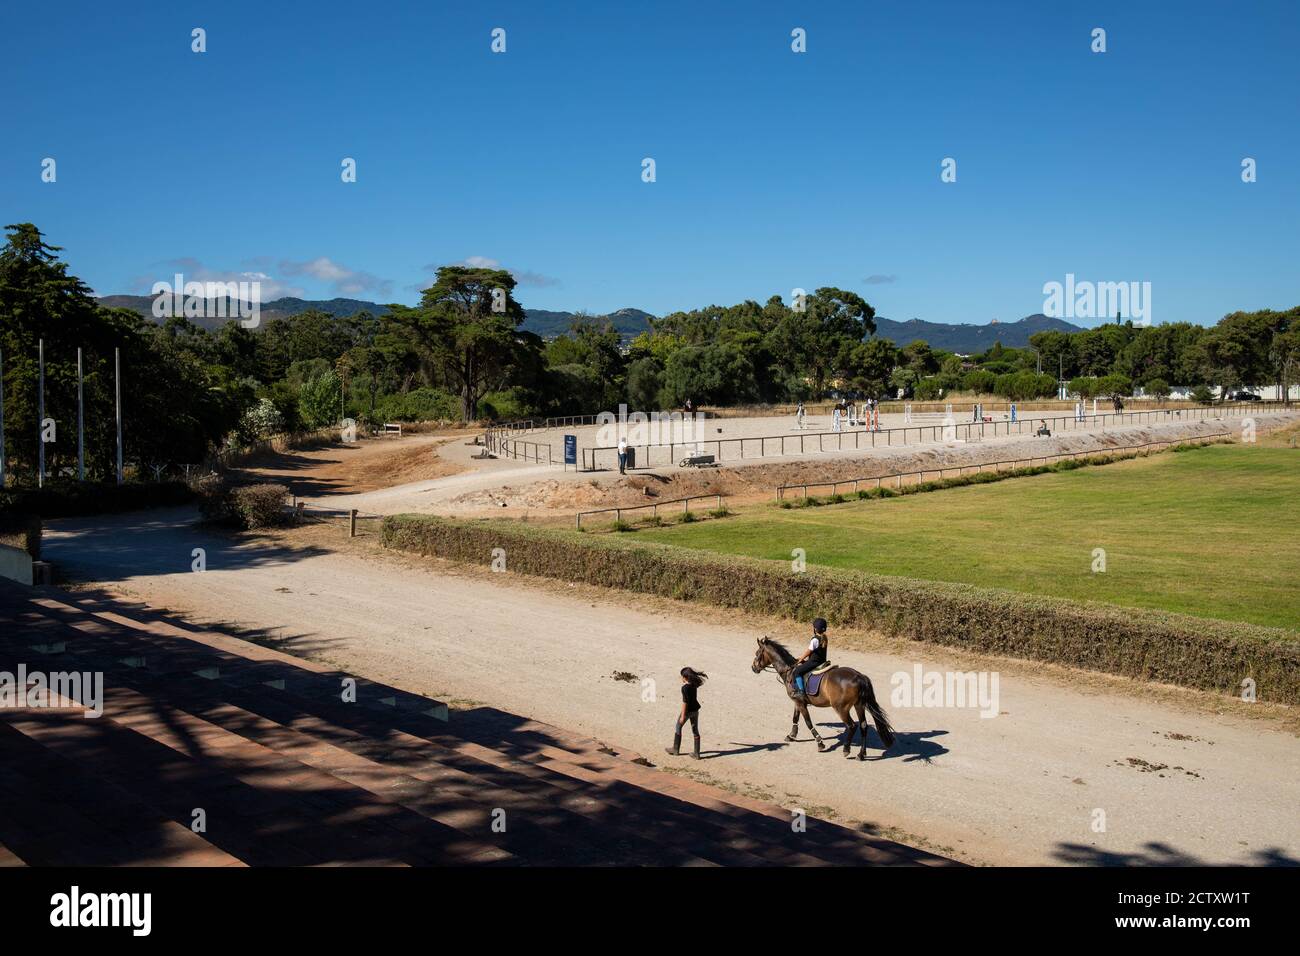 Centro Equitazione nel resort Quinta da Marinha originale situato all'interno del Parco Naturale Sintra - Cascais, Patrimonio Mondiale dell'Umanita' dell'UNESCO, in Portogallo. Foto Stock